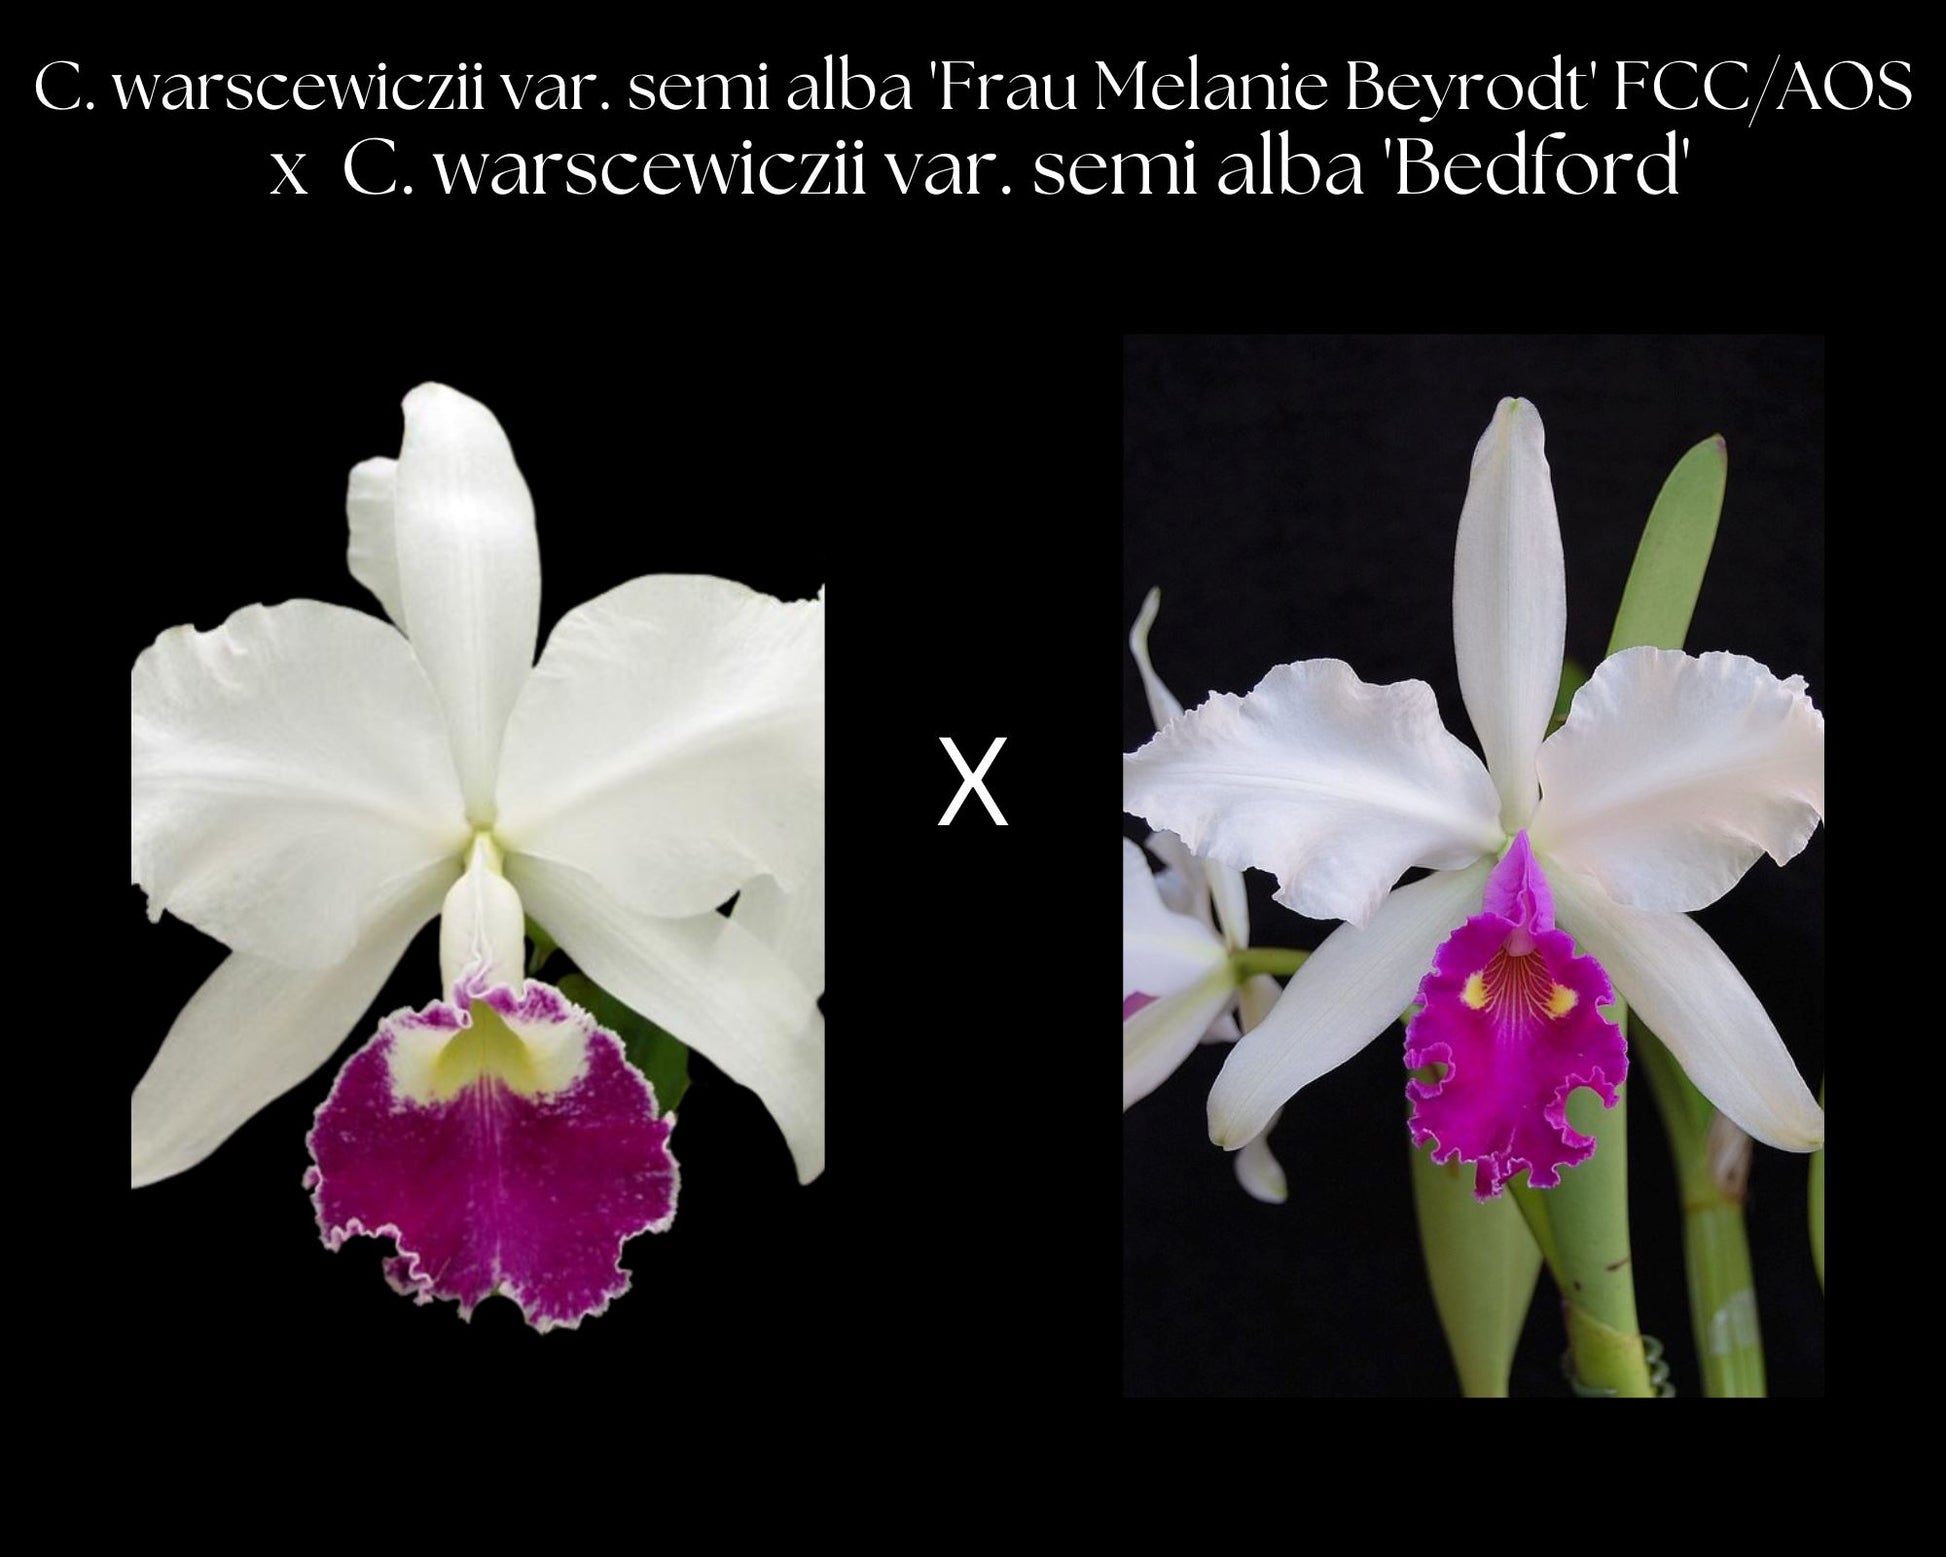 Cattleya warscewiczii var. semi alba 'Frau Melanie Beyrodt' FCC/AOS x 'Bedford' Cattleya La Foresta Orchids 